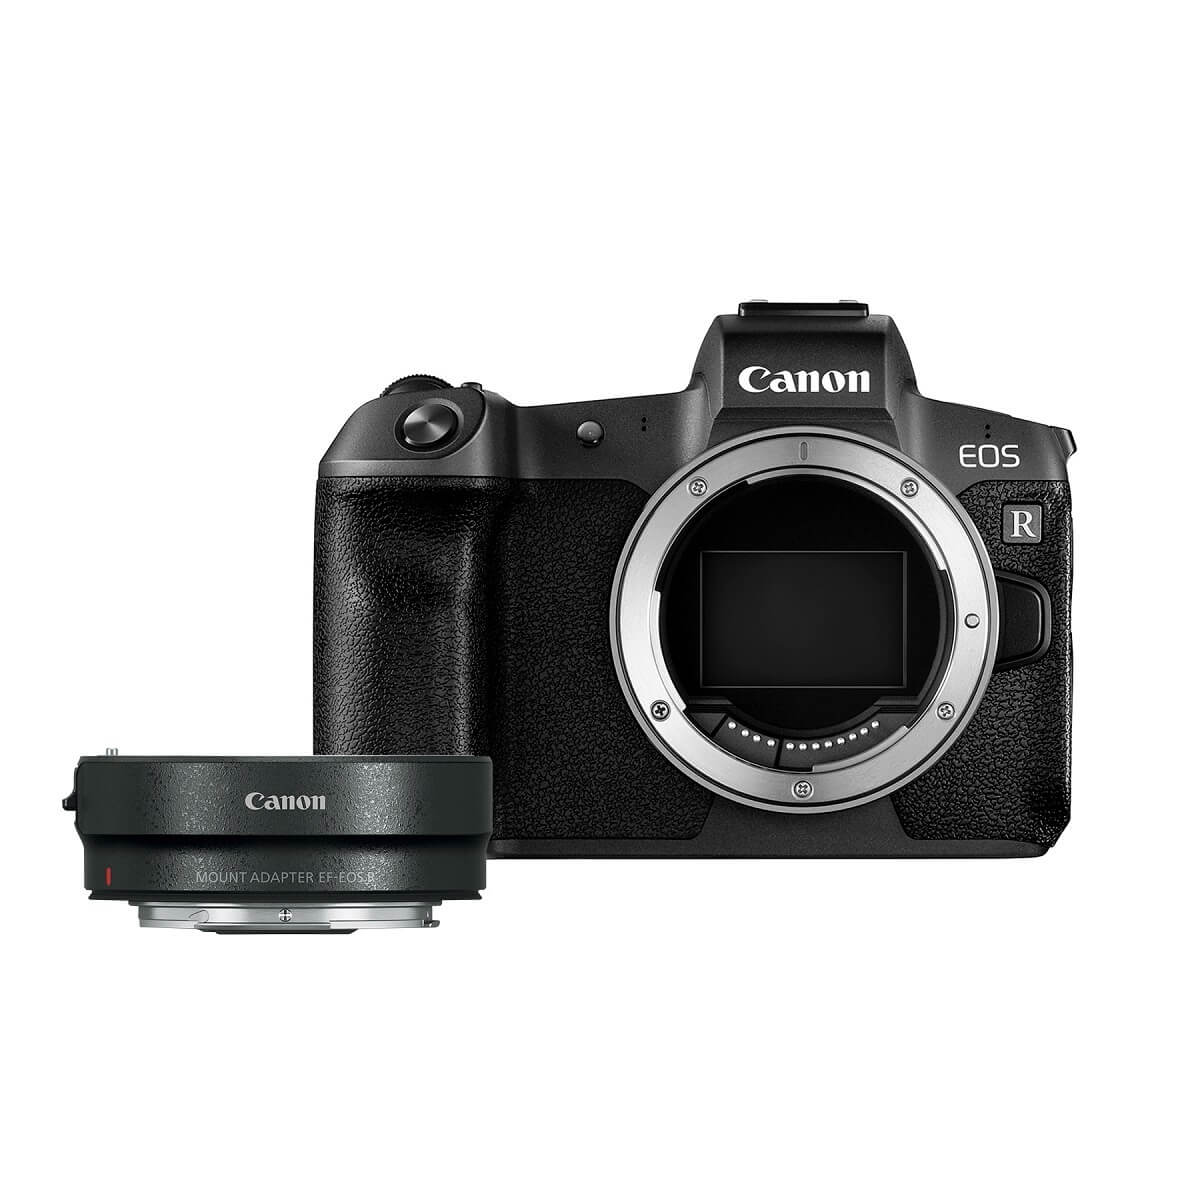 Canon - Cámara Mirrorless EOS R Cuerpo más Adaptador – Negro